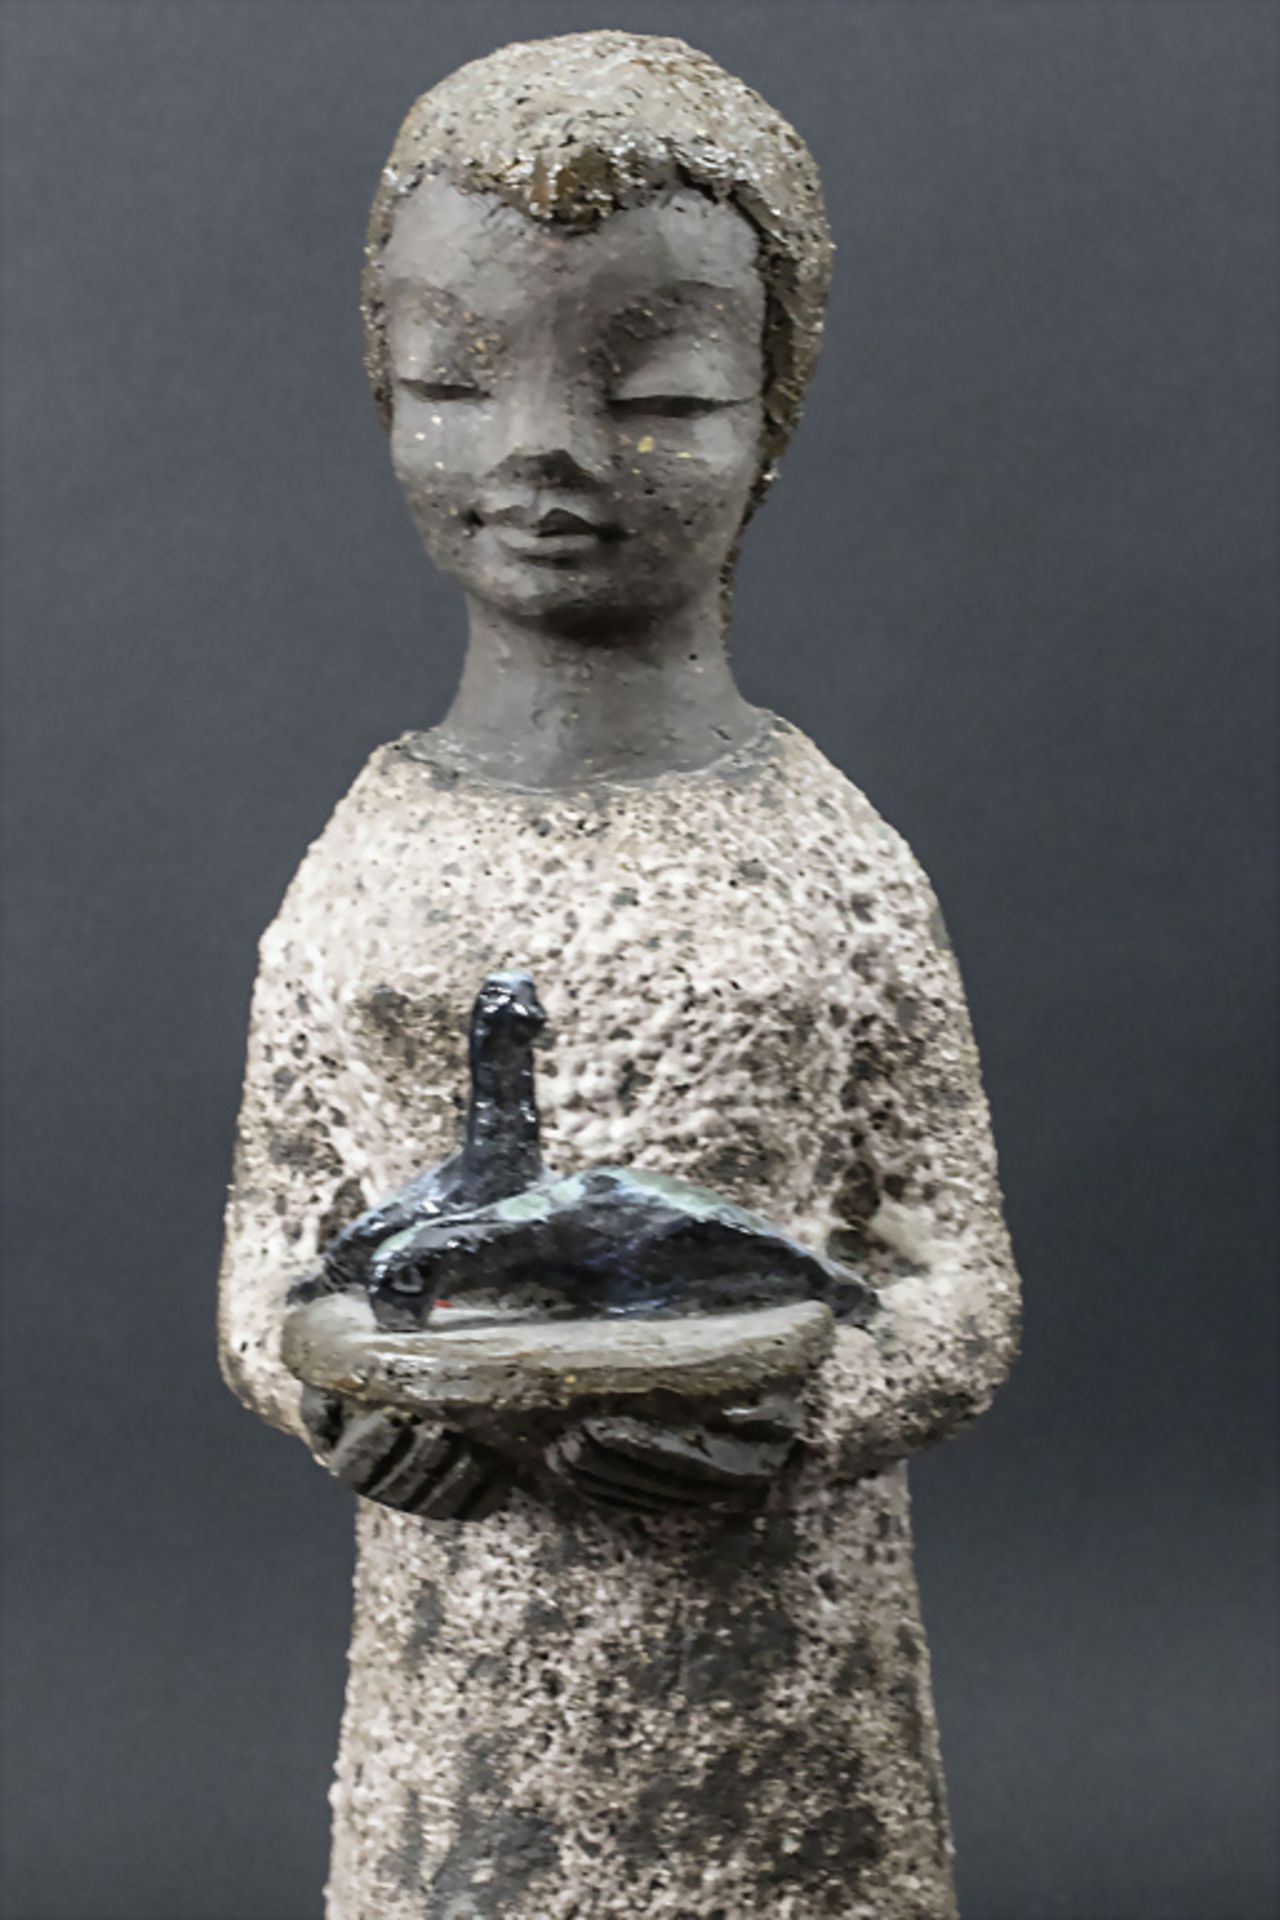 Künstlerkeramik Plastik 'Frau mit Tauben' / An artist ceramic sculpture 'Woman with pigeons', ... - Bild 2 aus 5